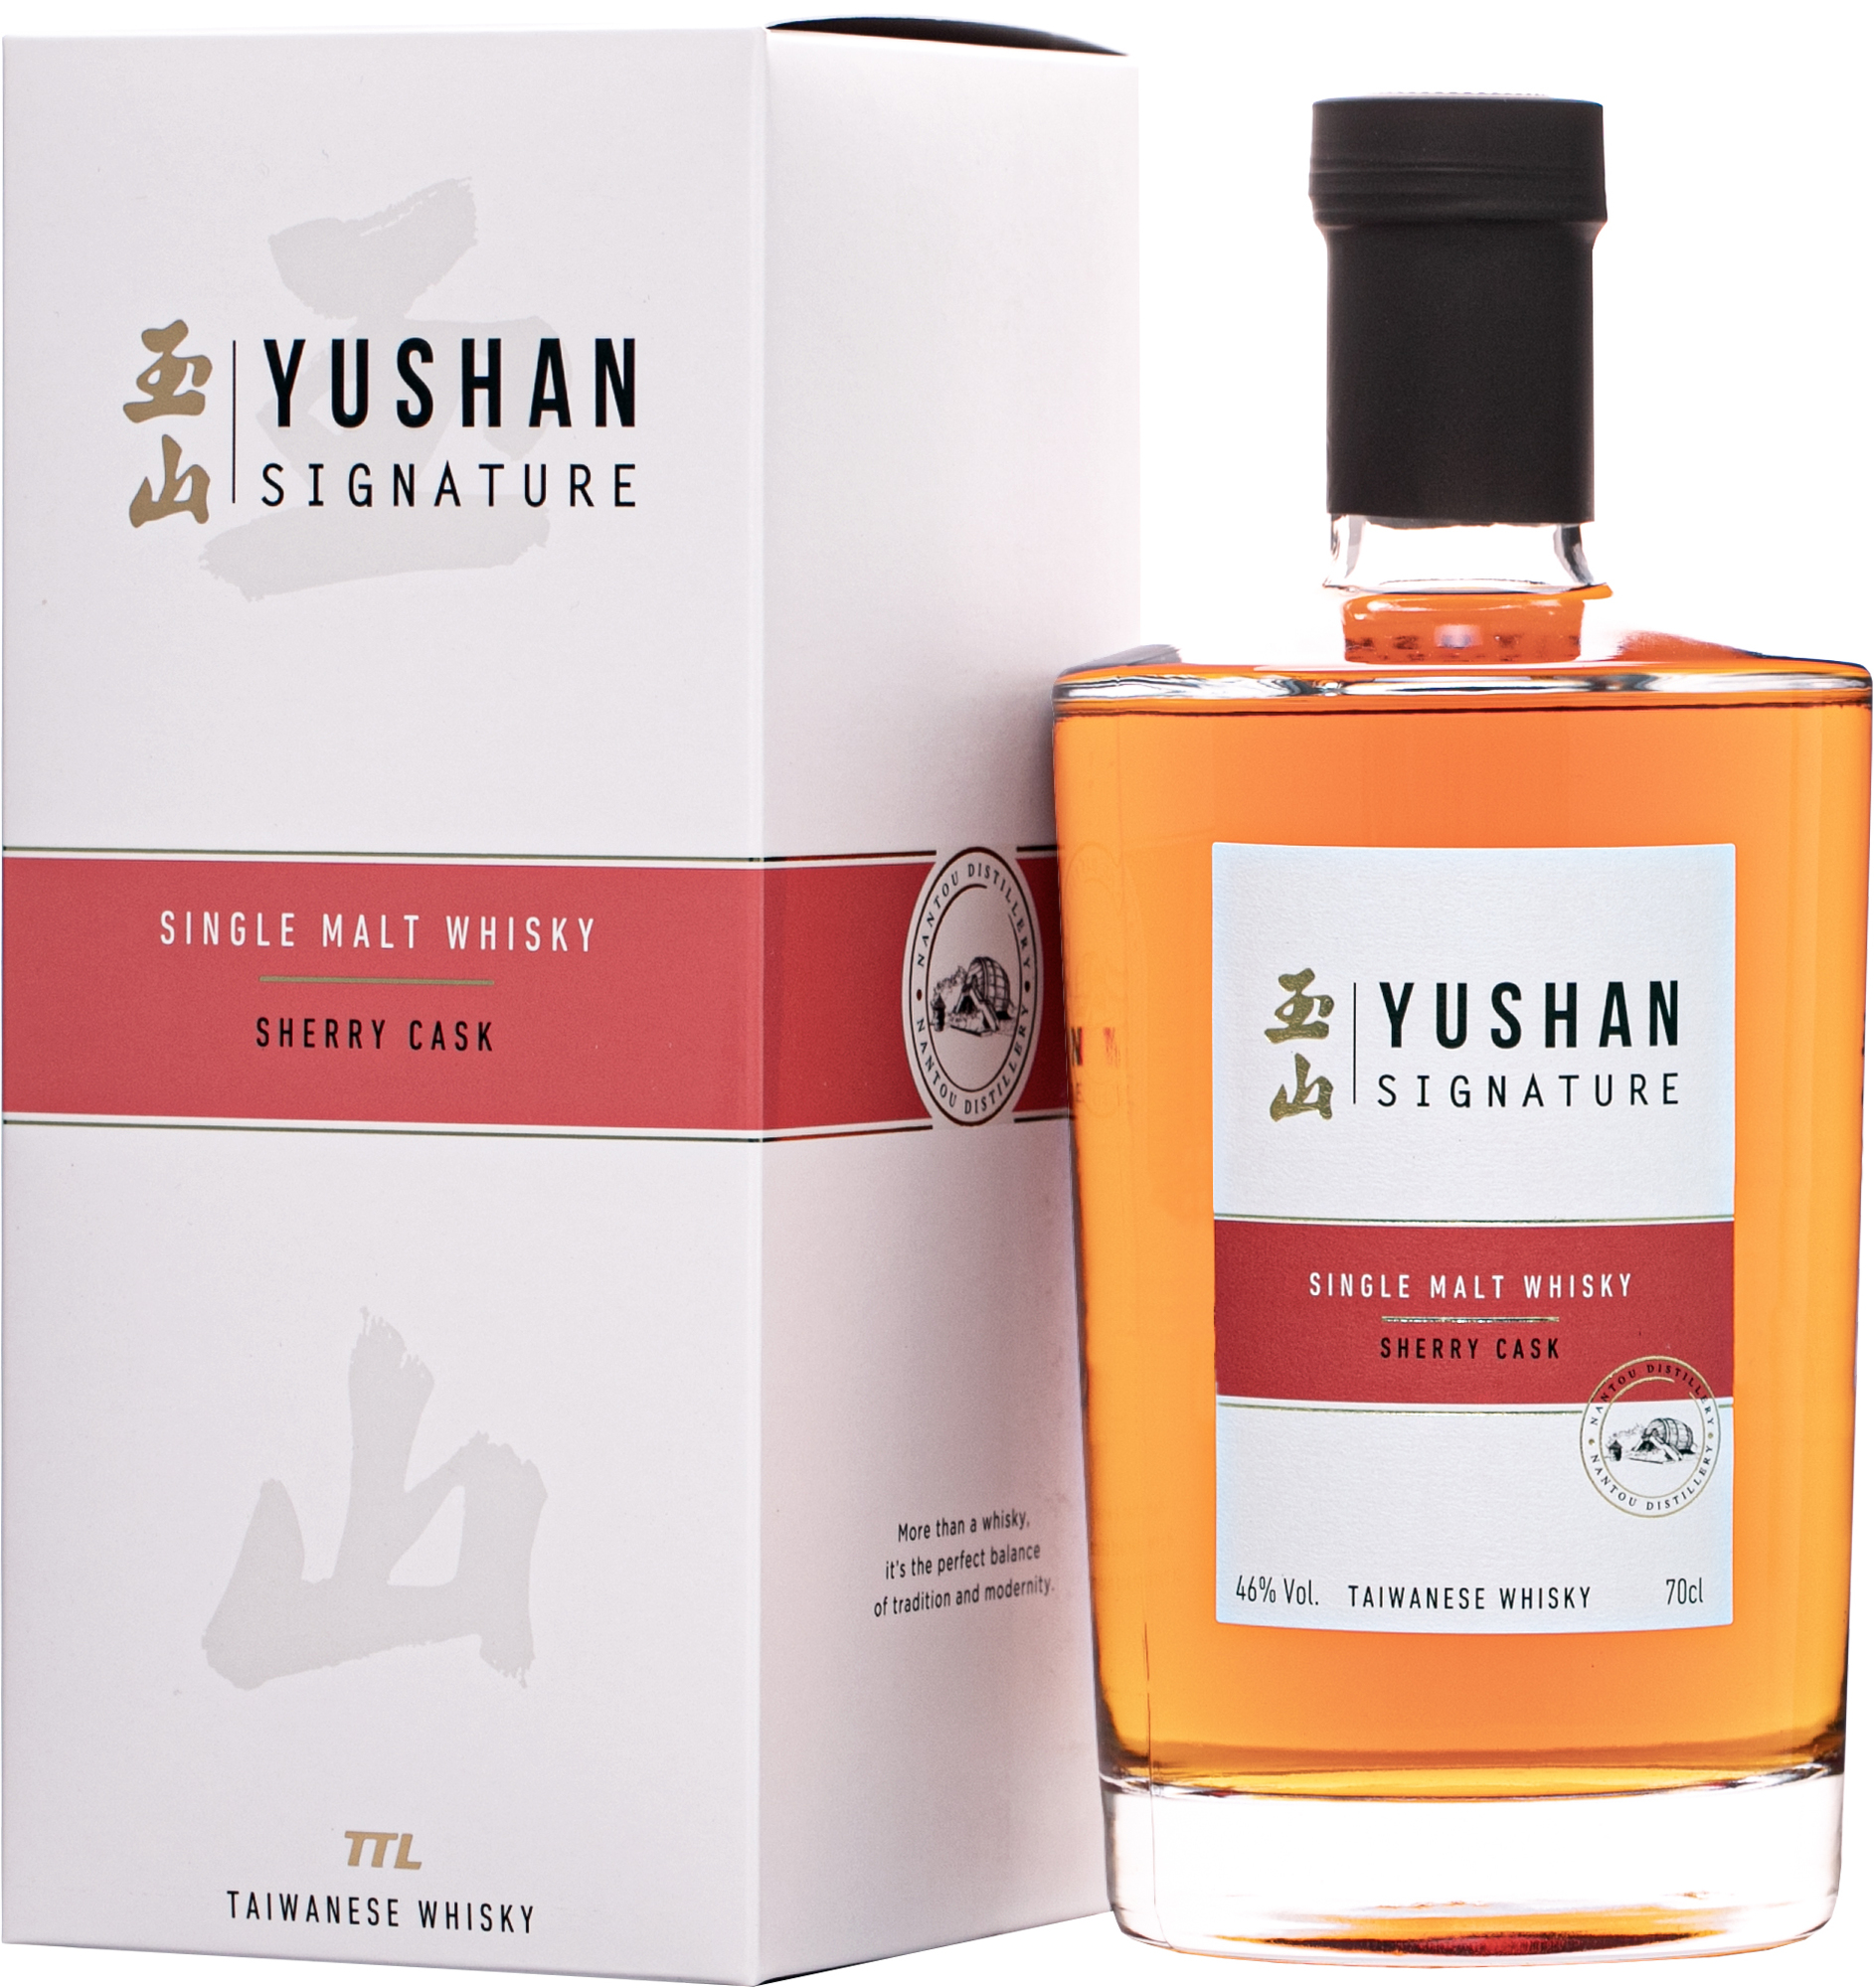 Yushan Single Malt Whisky Sherry Cask 46% 0,7l (darčekové balenie kazeta)